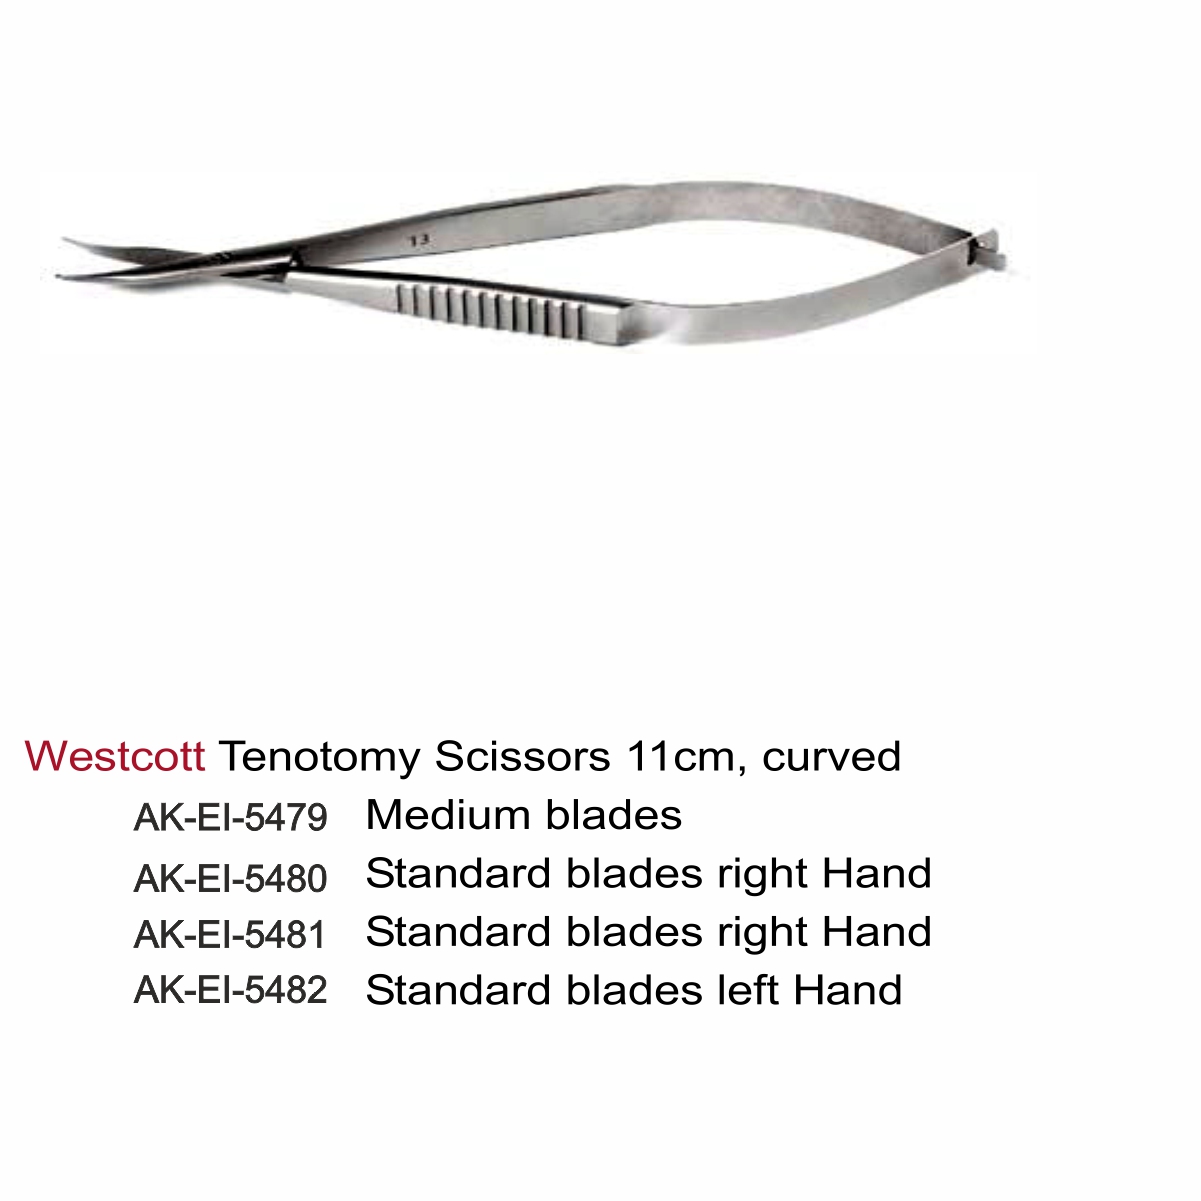 Westcott Tenotomy Scissors